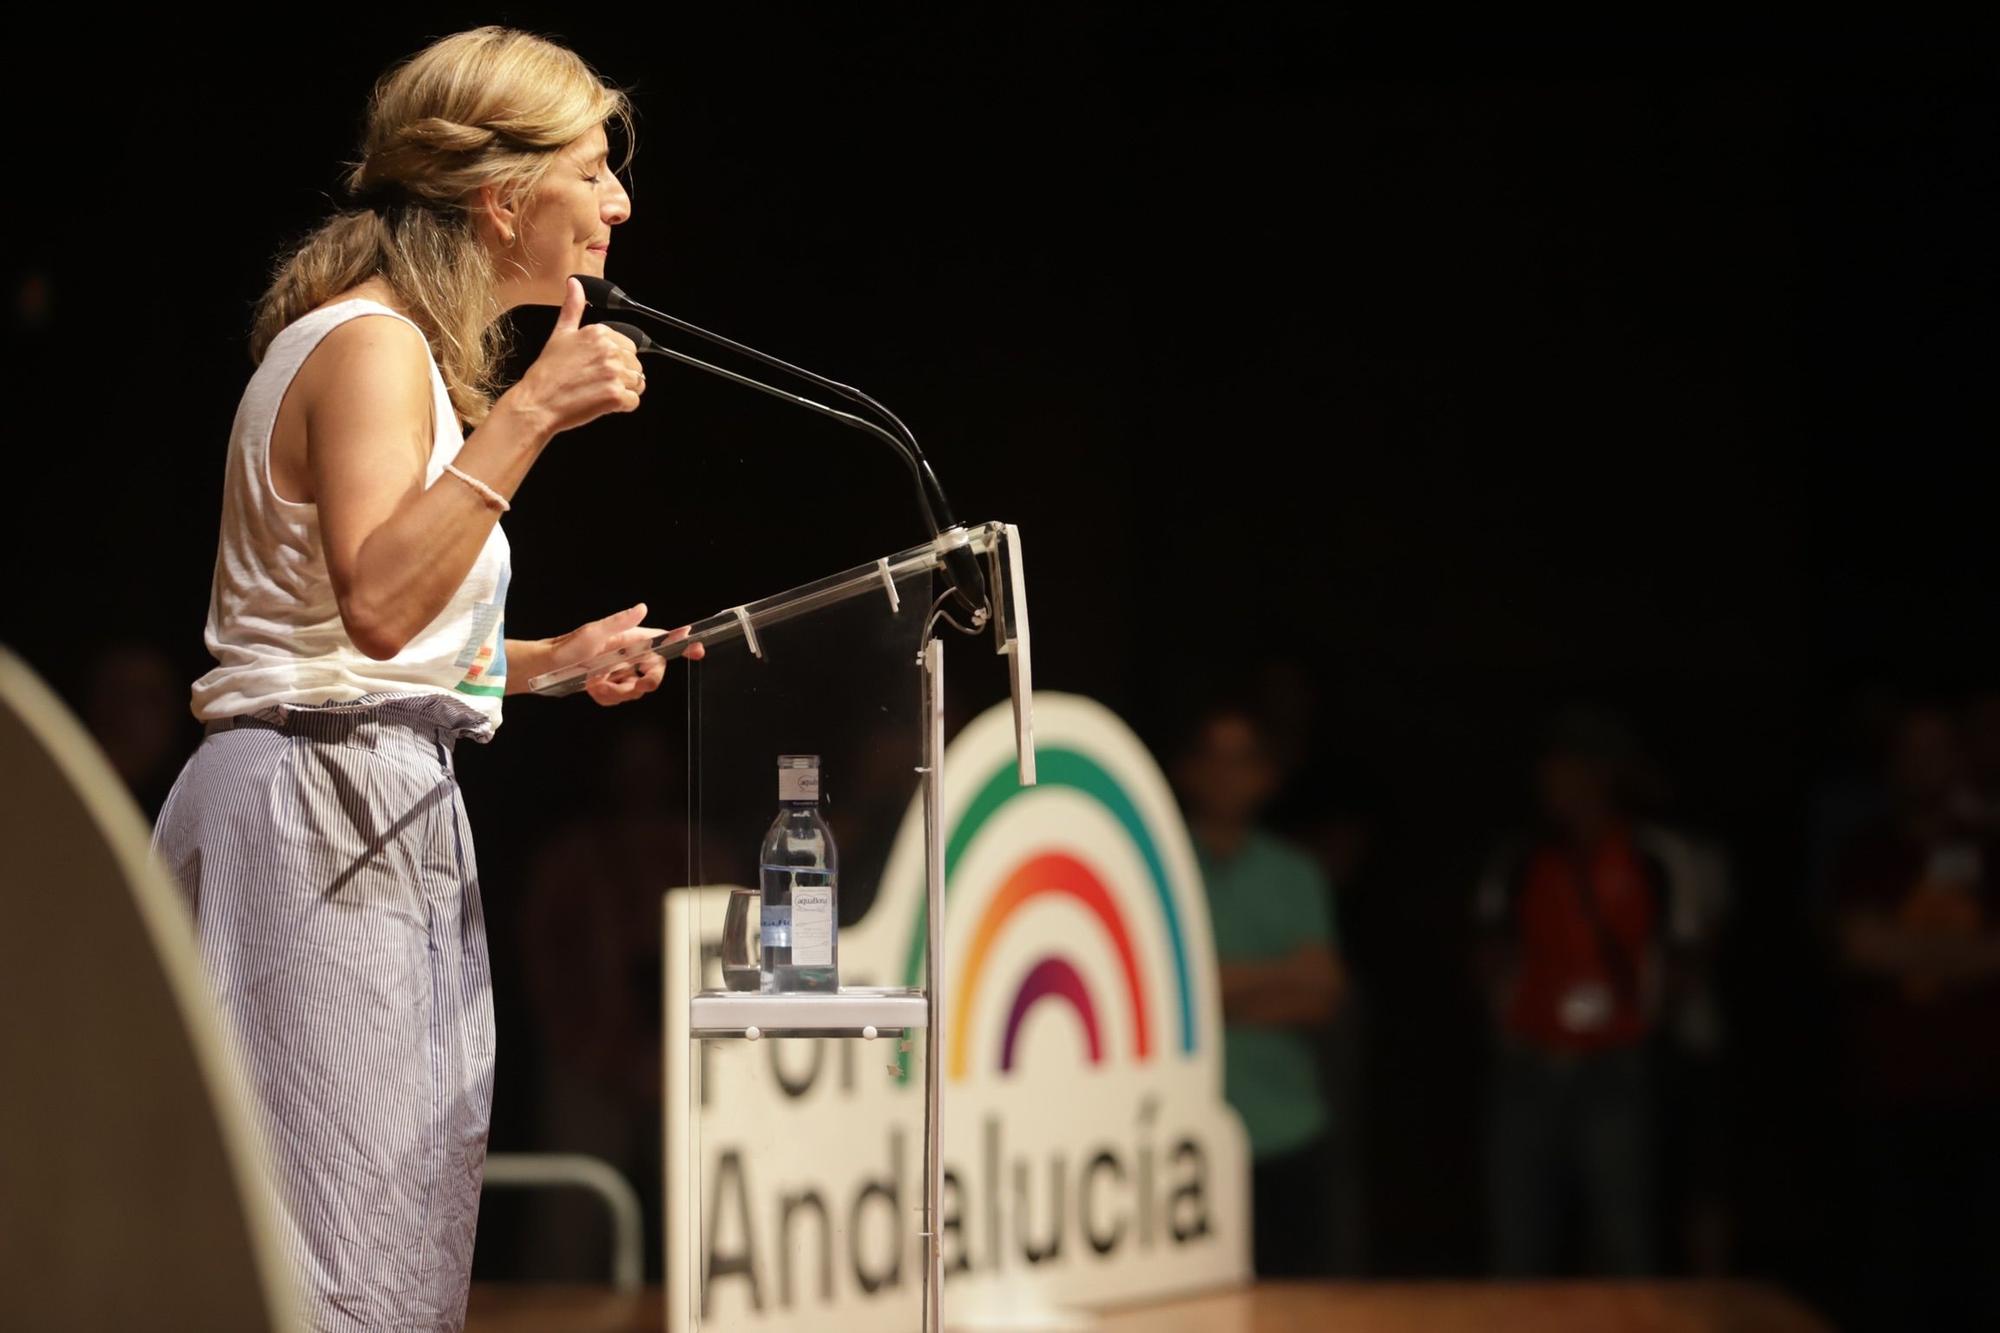 Elecciones andaluzas | Mitin de Por Andalucía con Yolanda Díaz en el Palacio de Ferias